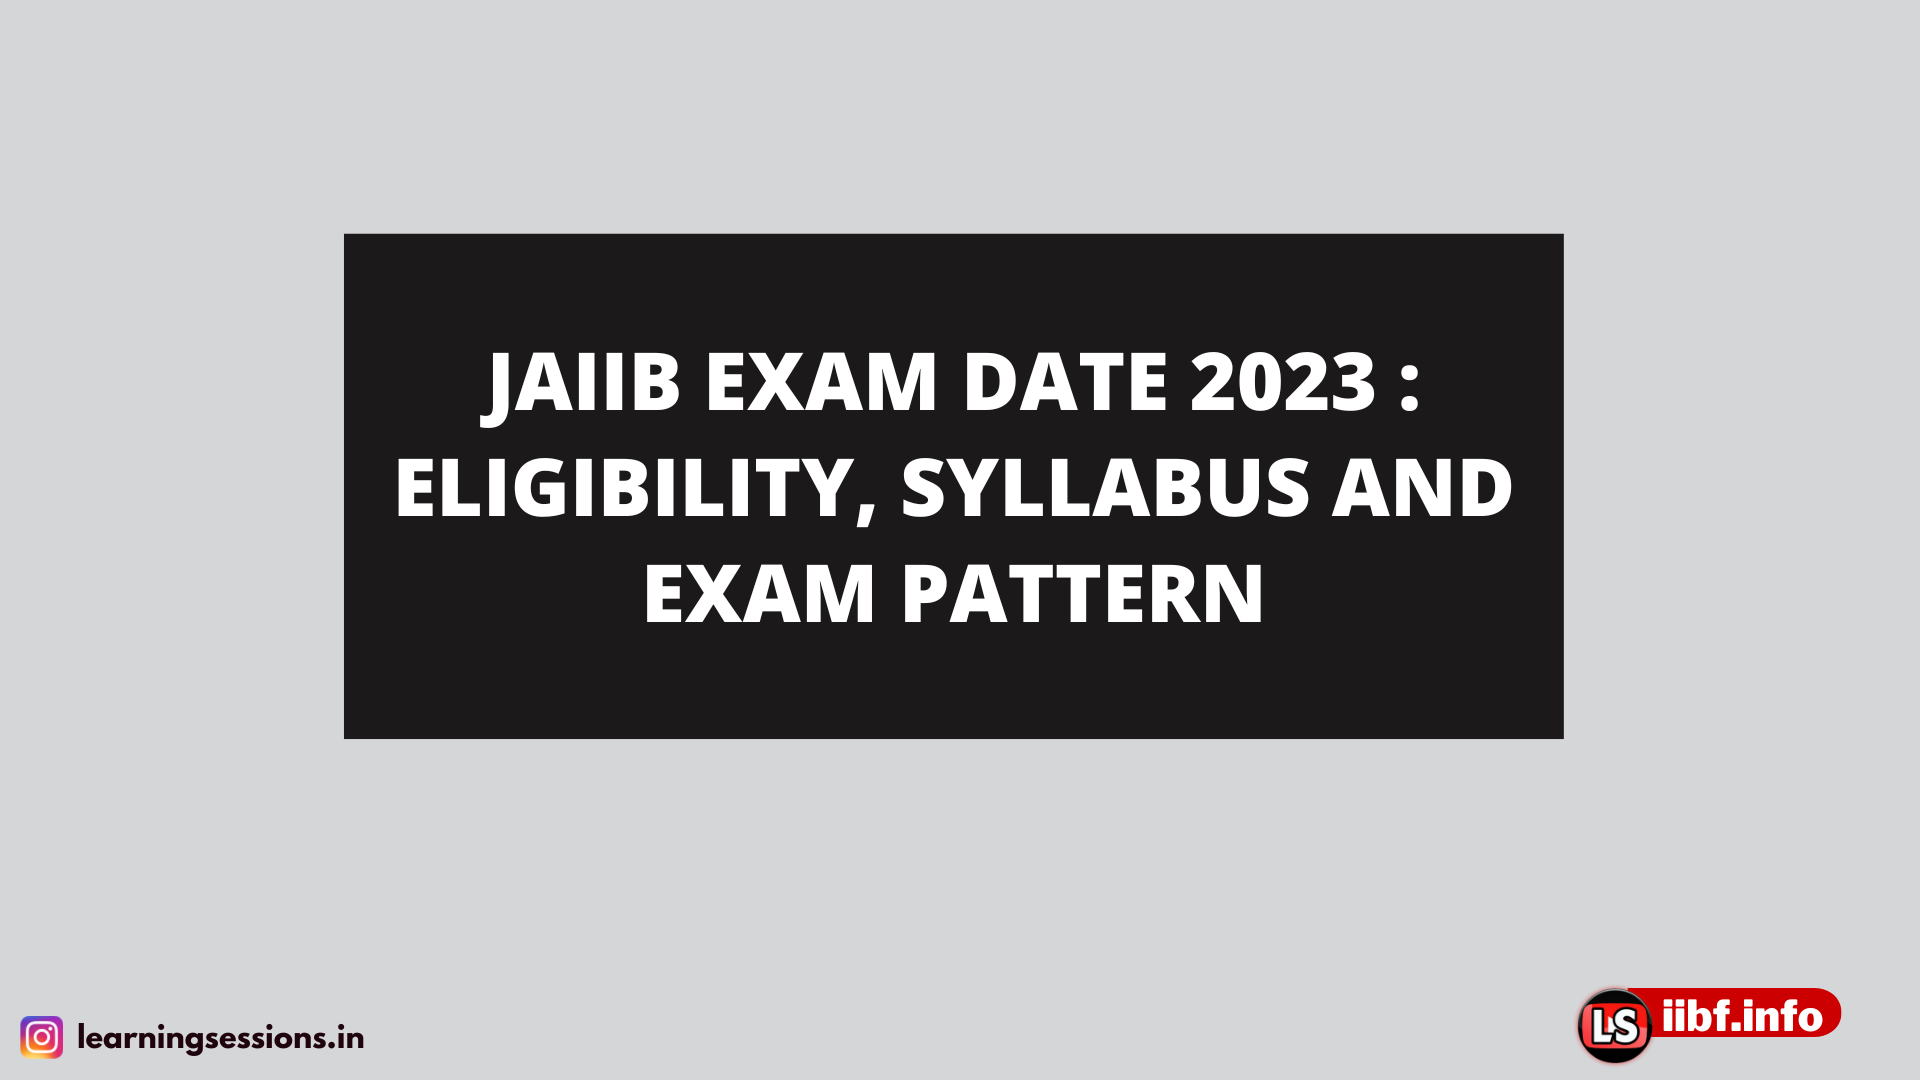 JAIIB EXAM DATE 2023 : ELIGIBILITY, SYLLABUS AND EXAM PATTERN